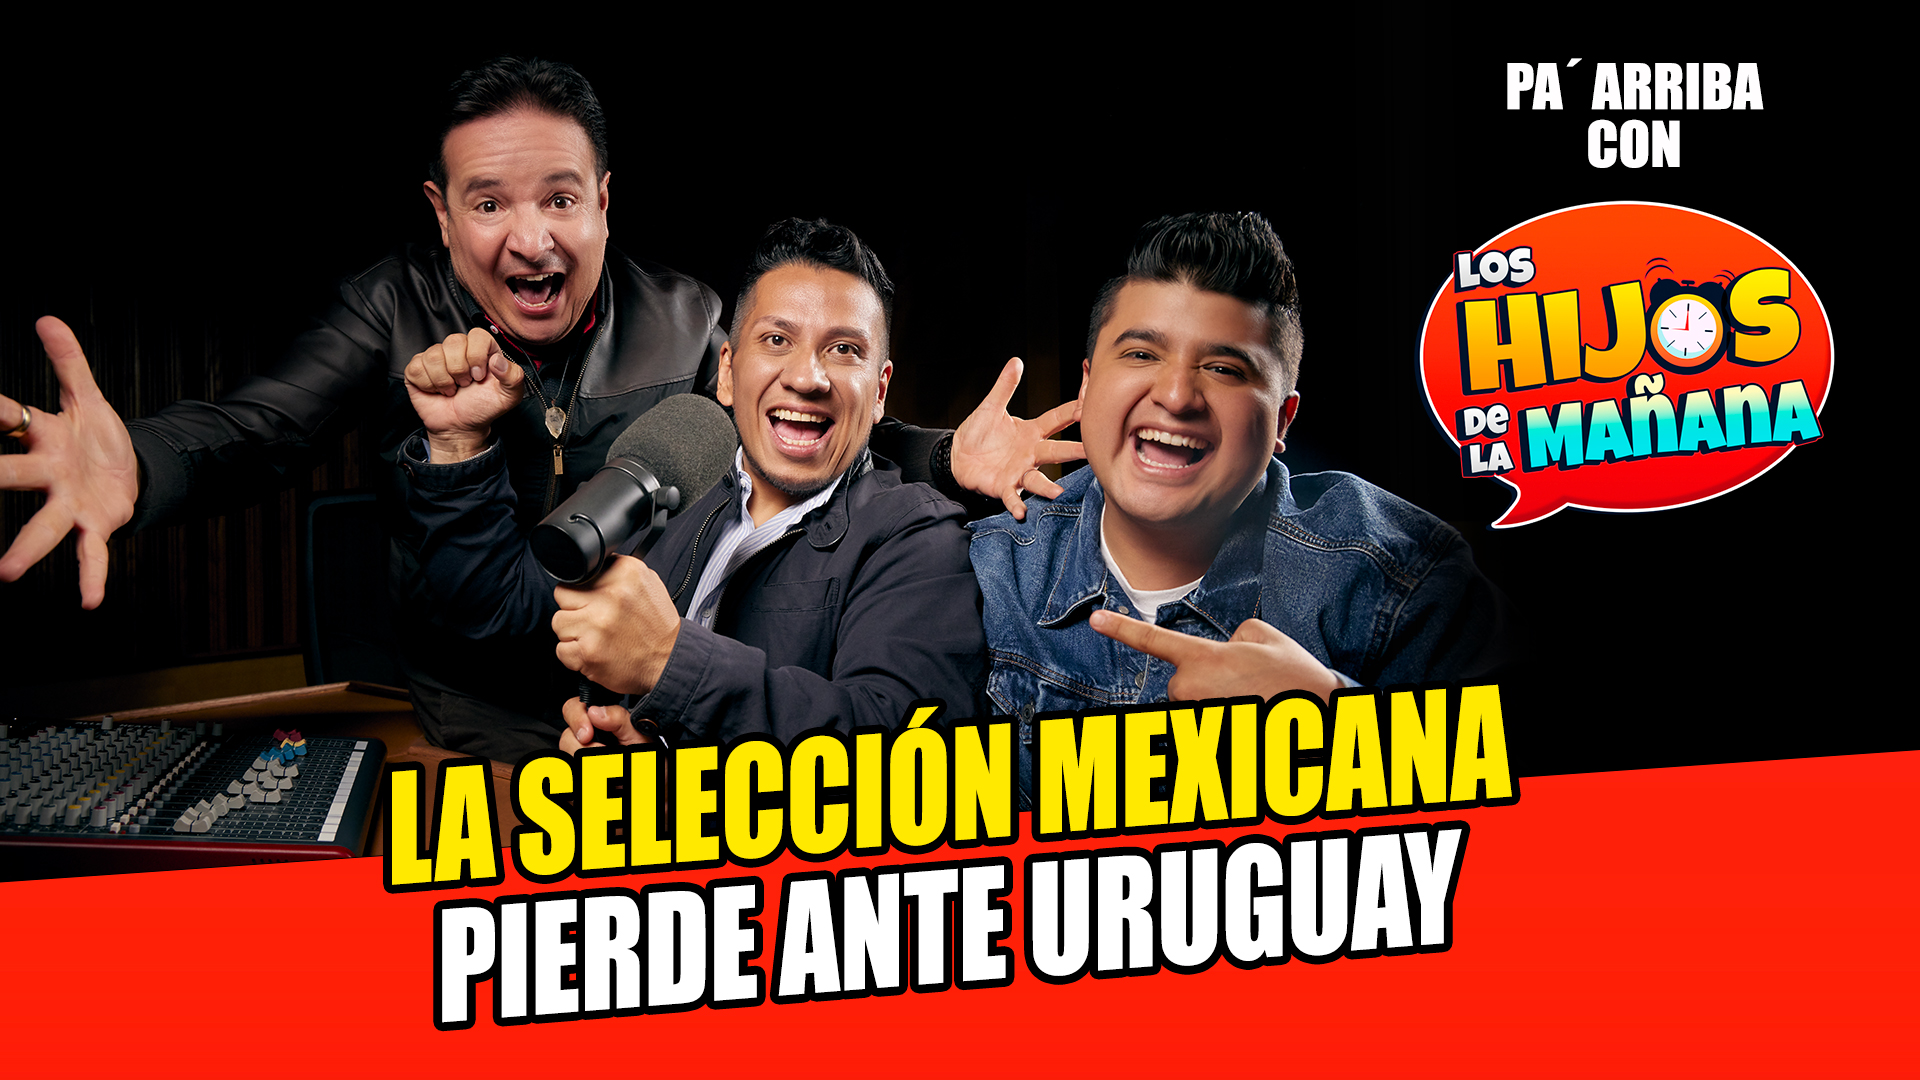 La Selección Mexicana pierde en partido ante Uruguay